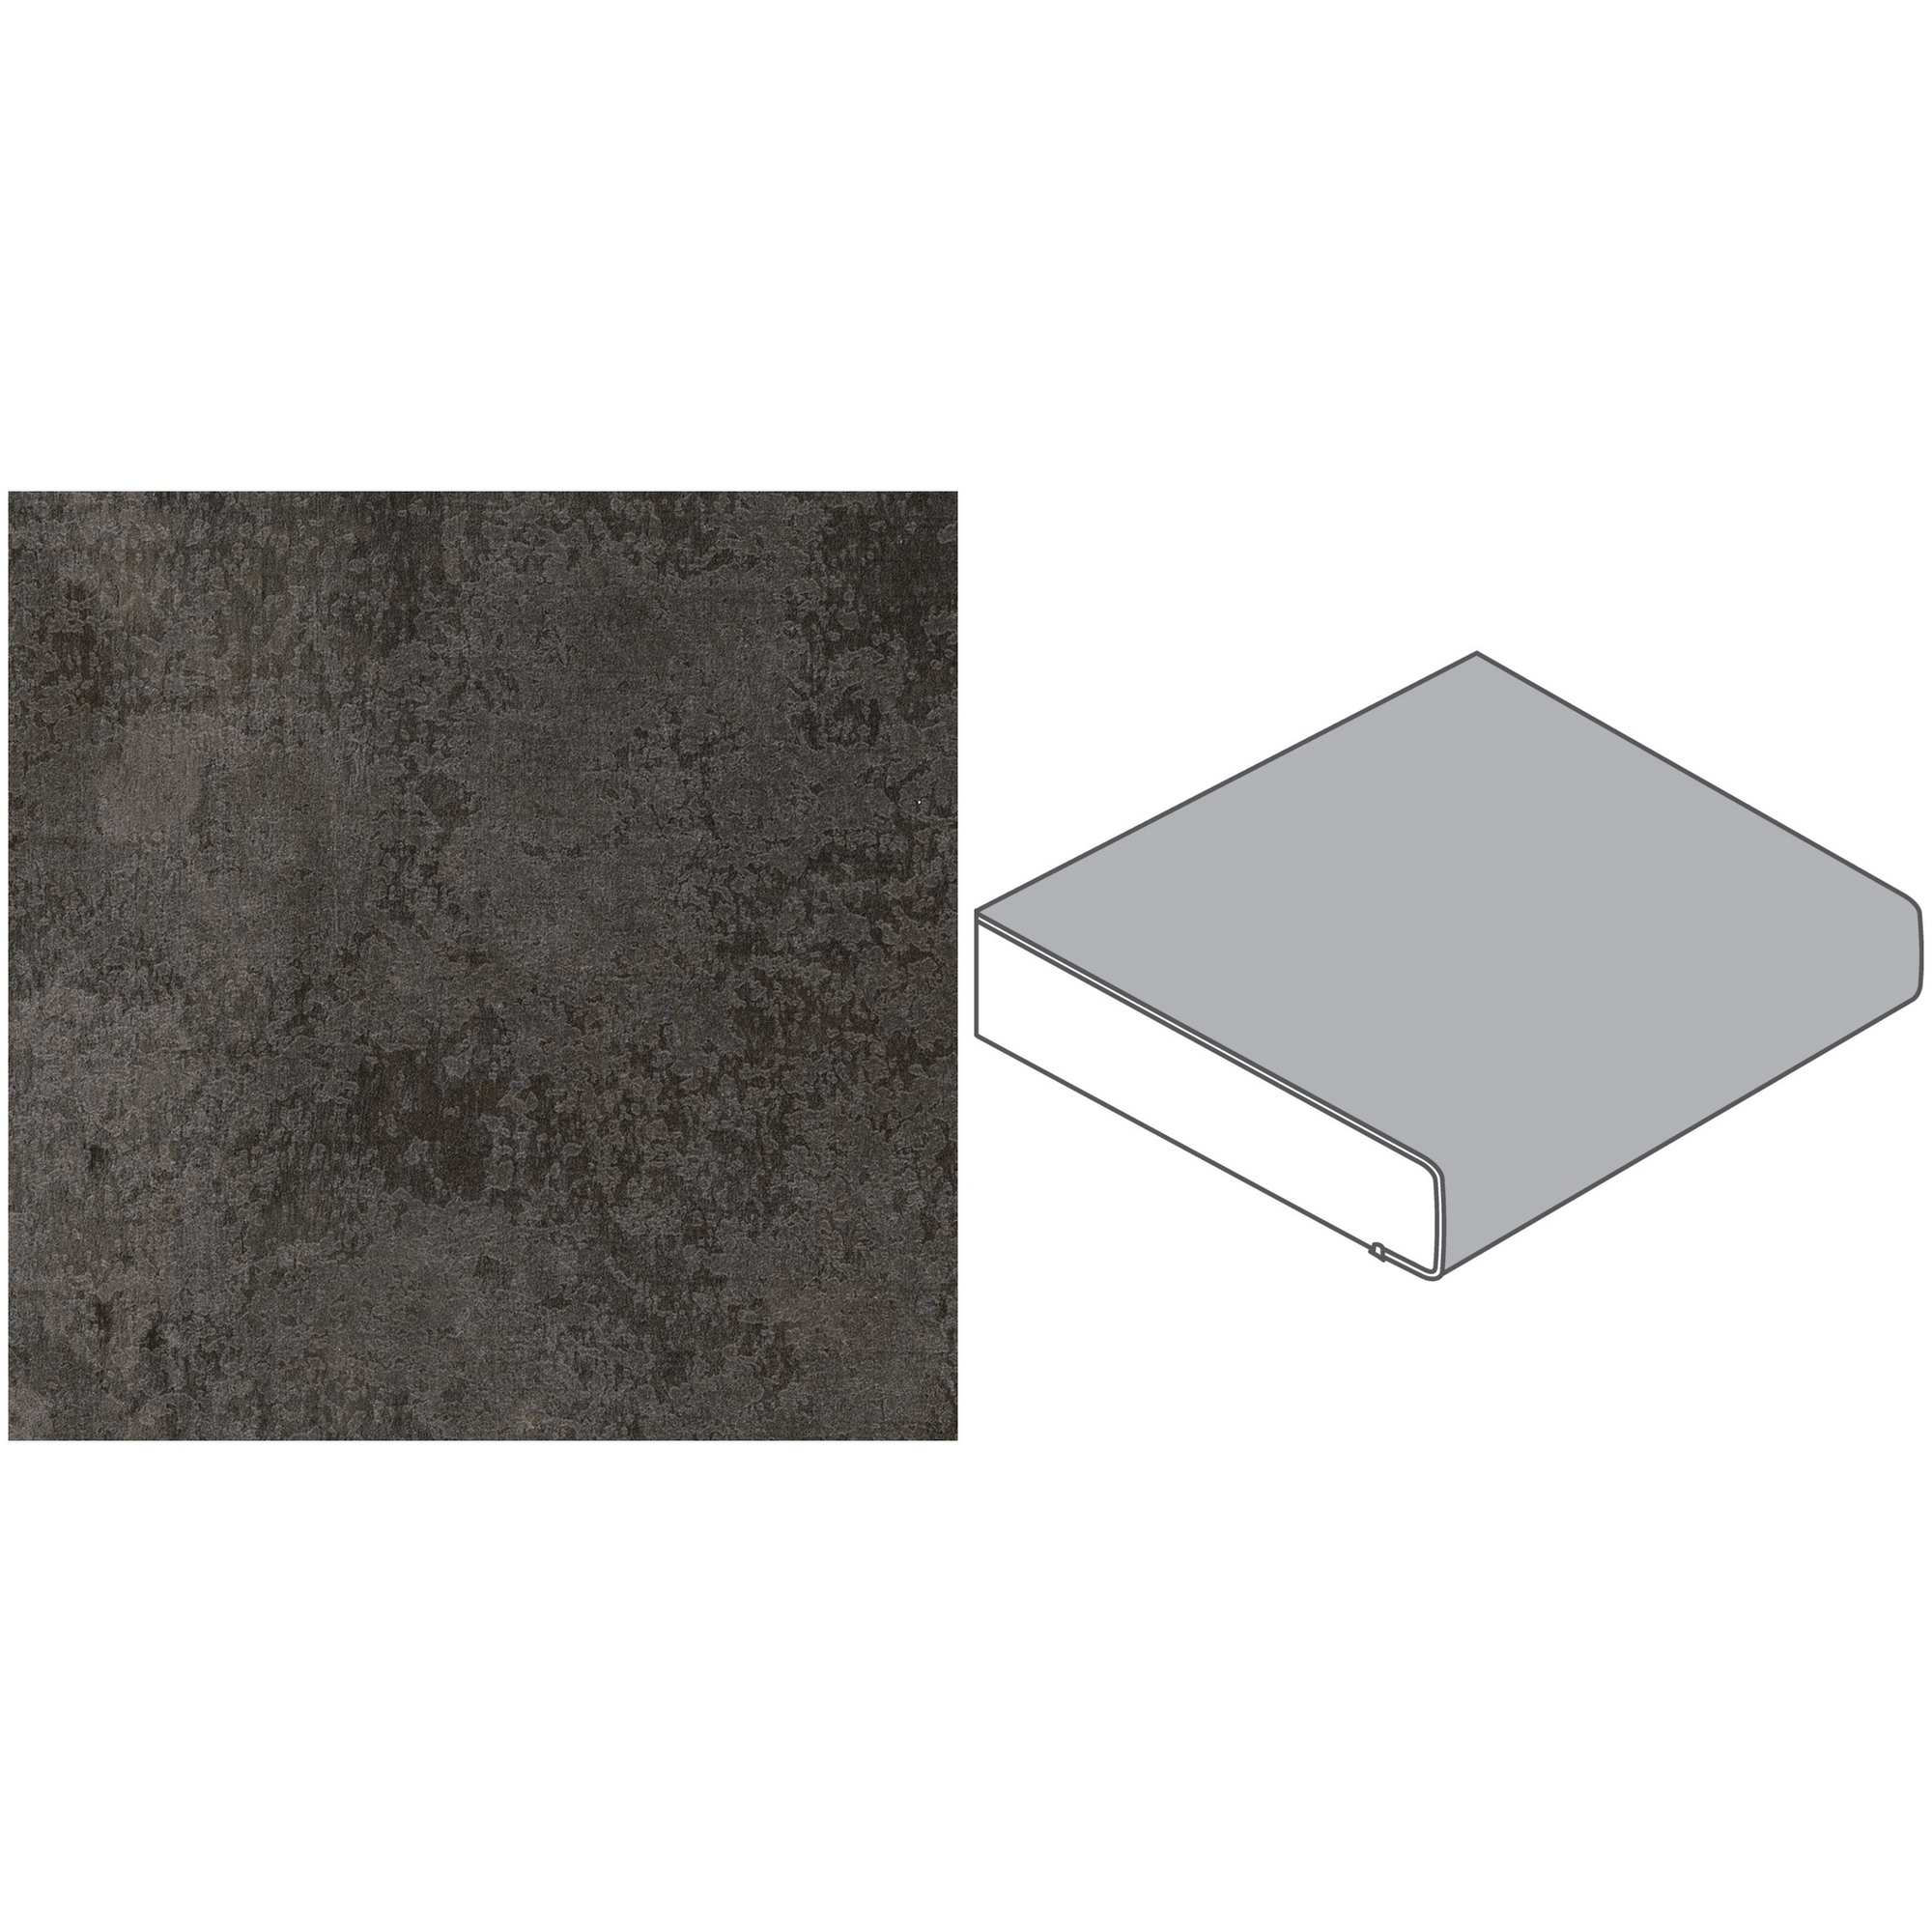 Küchenarbeitsplatte Spanplatte Metall Versicolour 305 x 60 x 3,9 cm + product picture